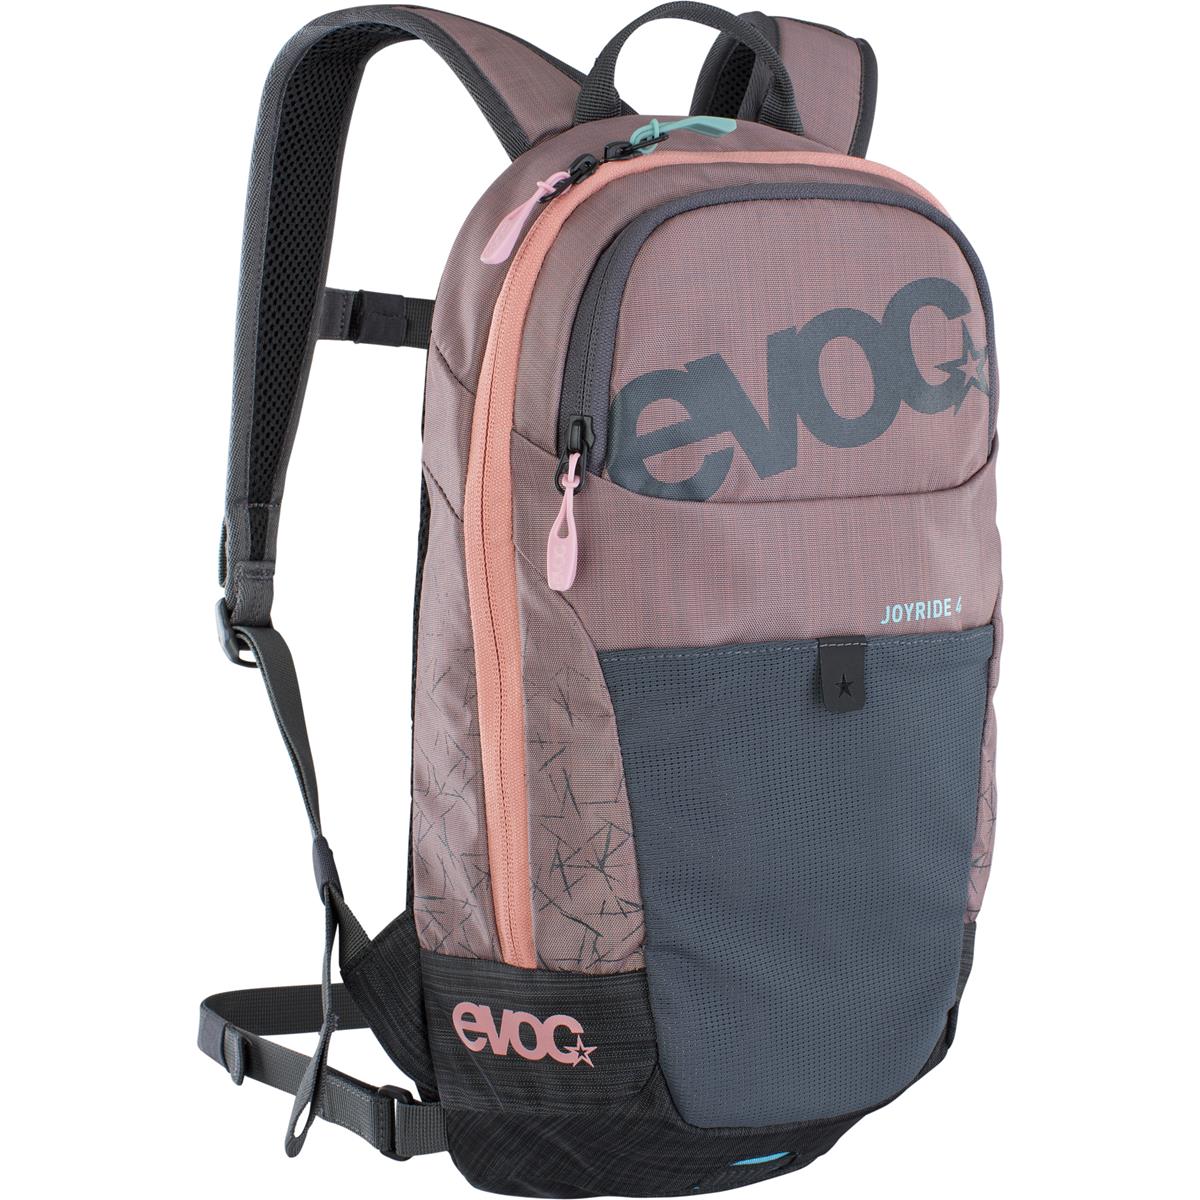 Evoc Kids Backpack Joyride Pink/Gray